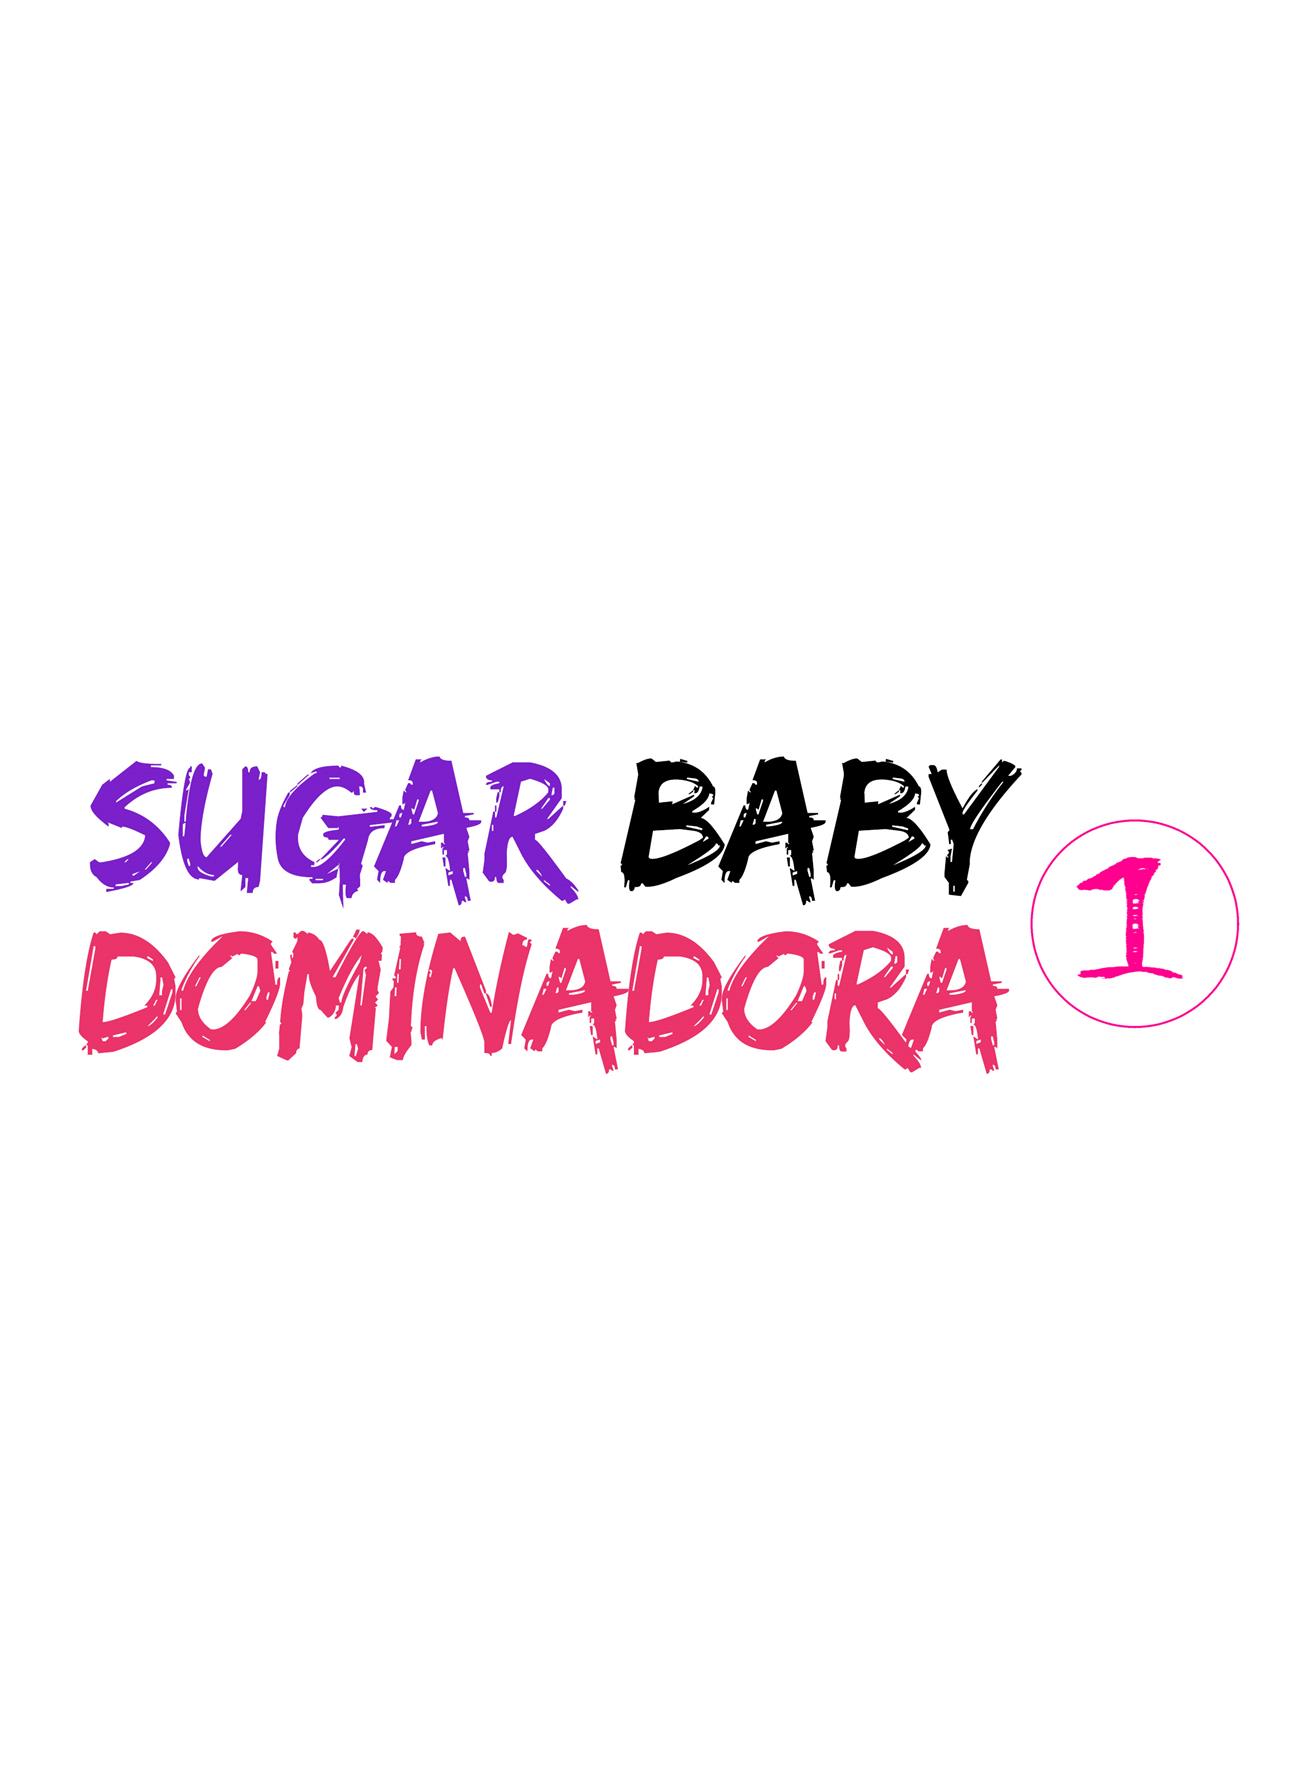 A Sugar Baby Dominadora